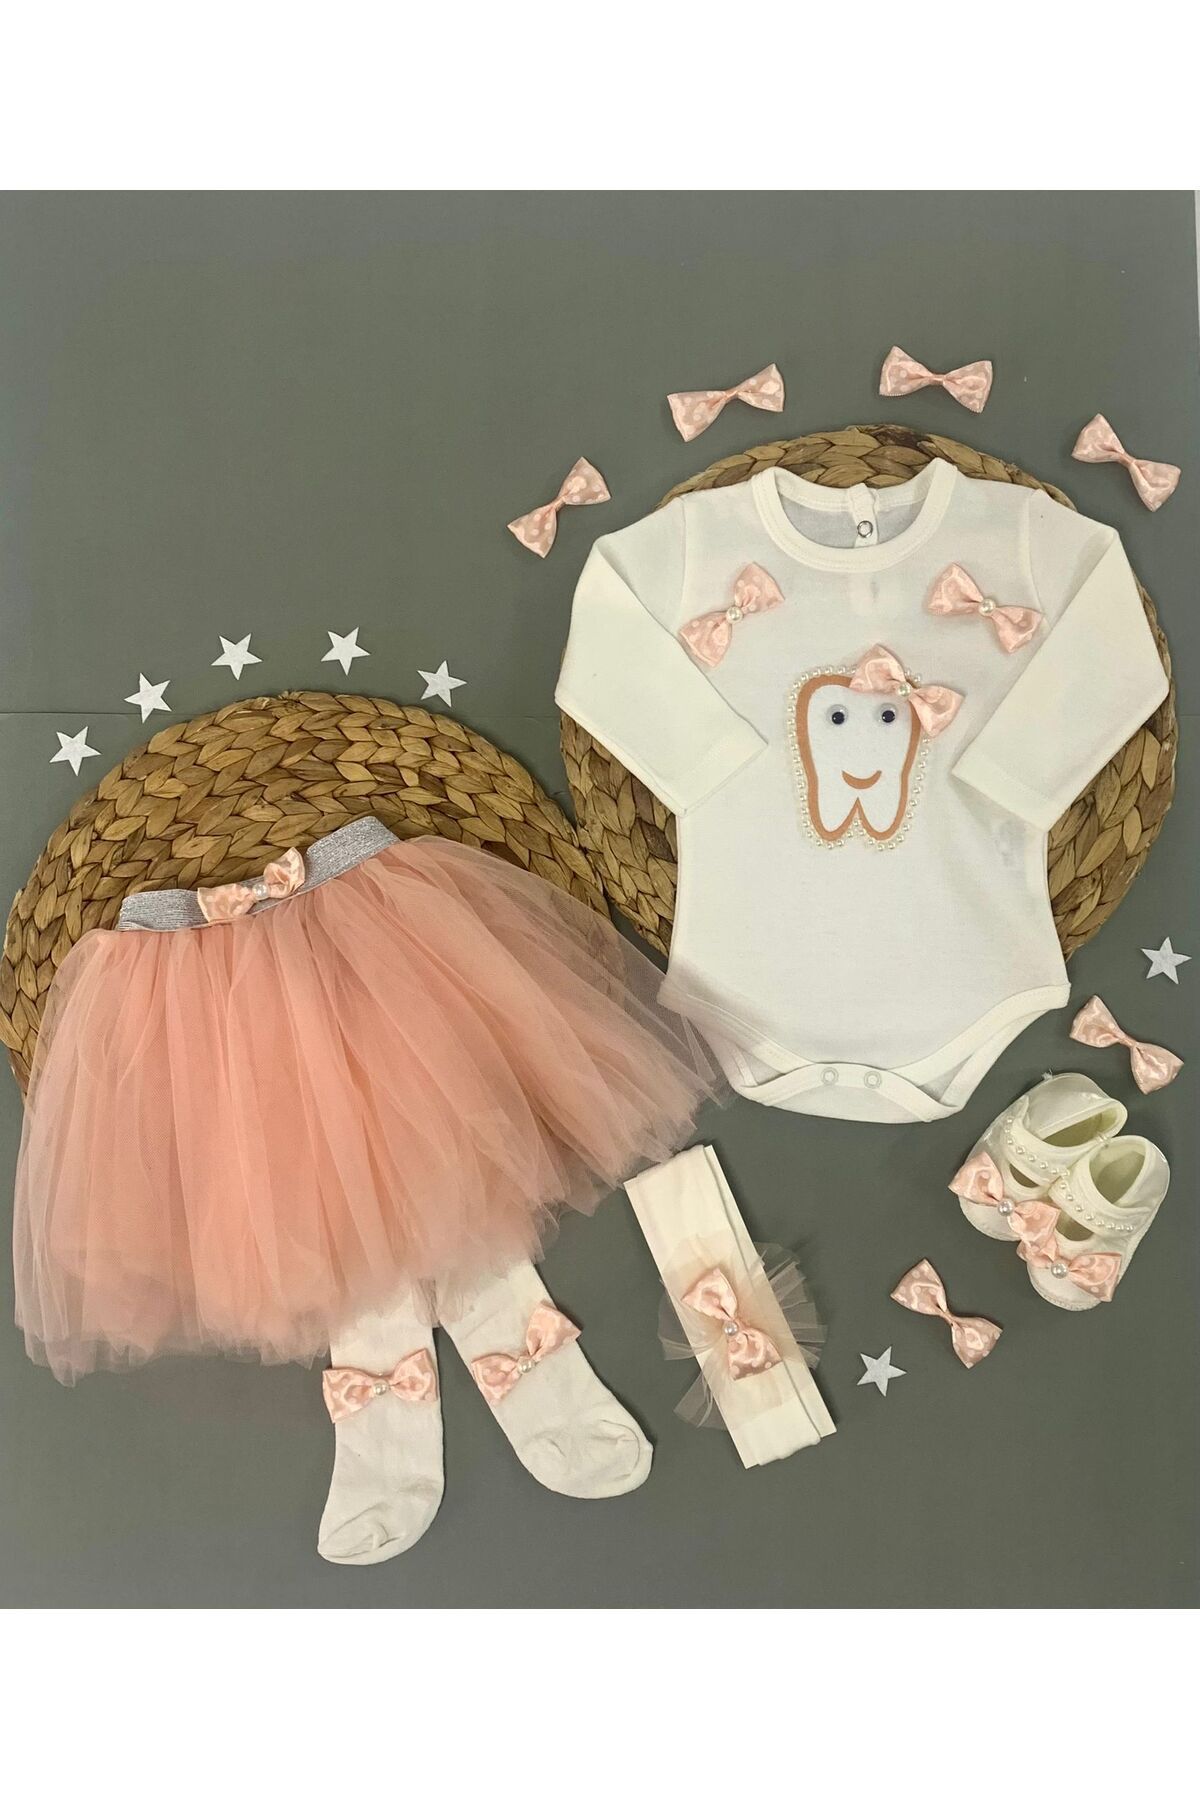 Petite Ponpon Baby Petite Ponpon BabyKız Bebek Doğum Günü Parti Kıyafeti Somon Tütü Etek Diş Buğdayı